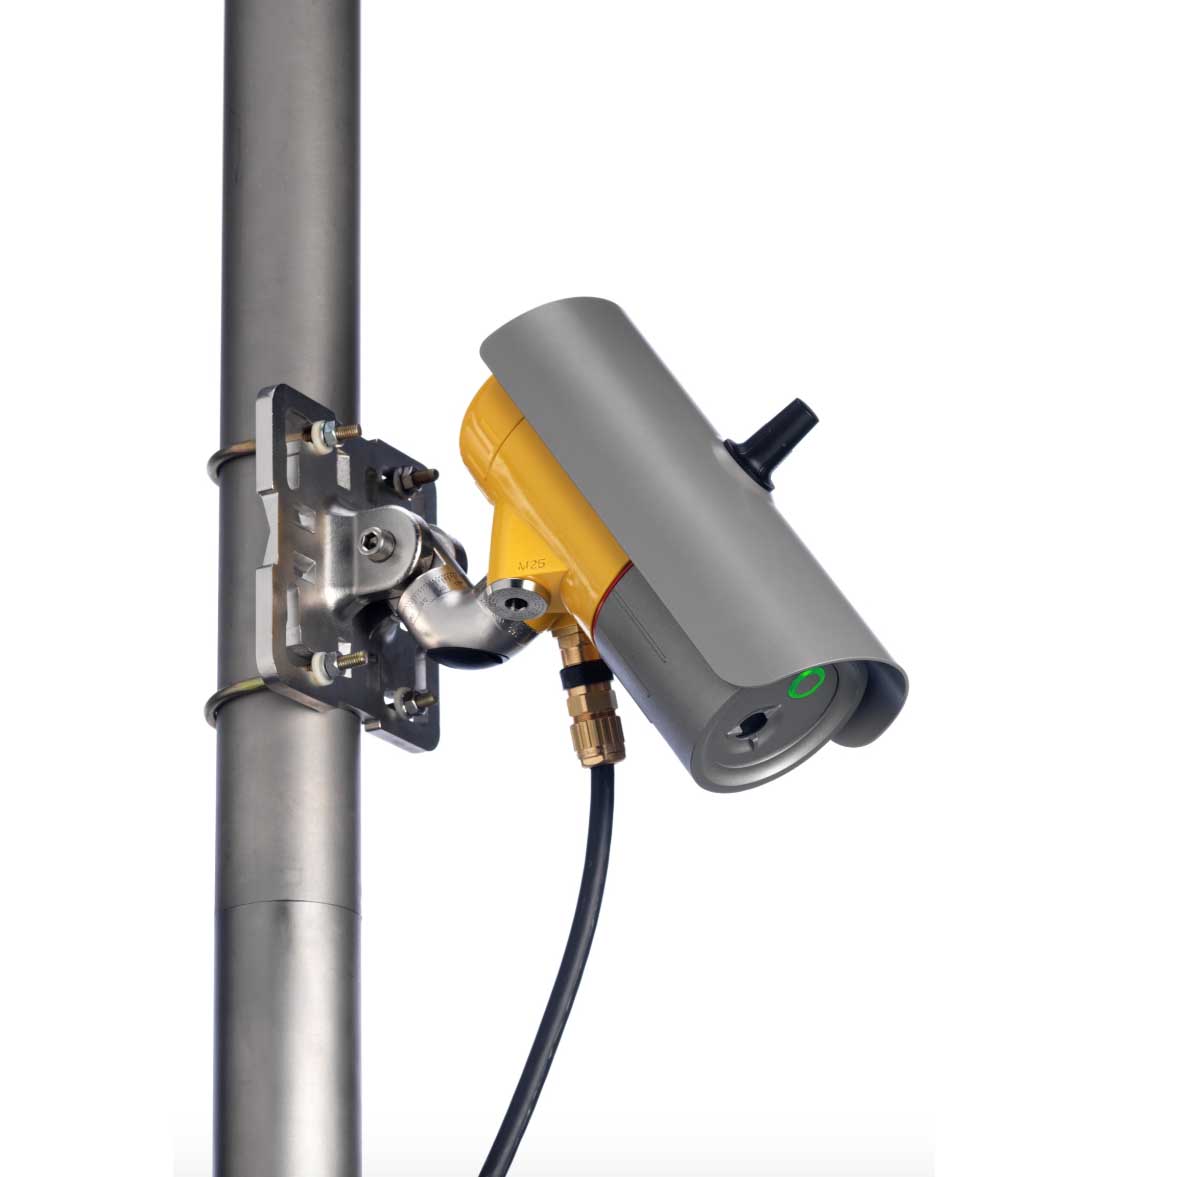 Searchzone Sonik Honeywell | Detector ultrasonico para pérdidas de gas - Sistema de incendio y gas industrial